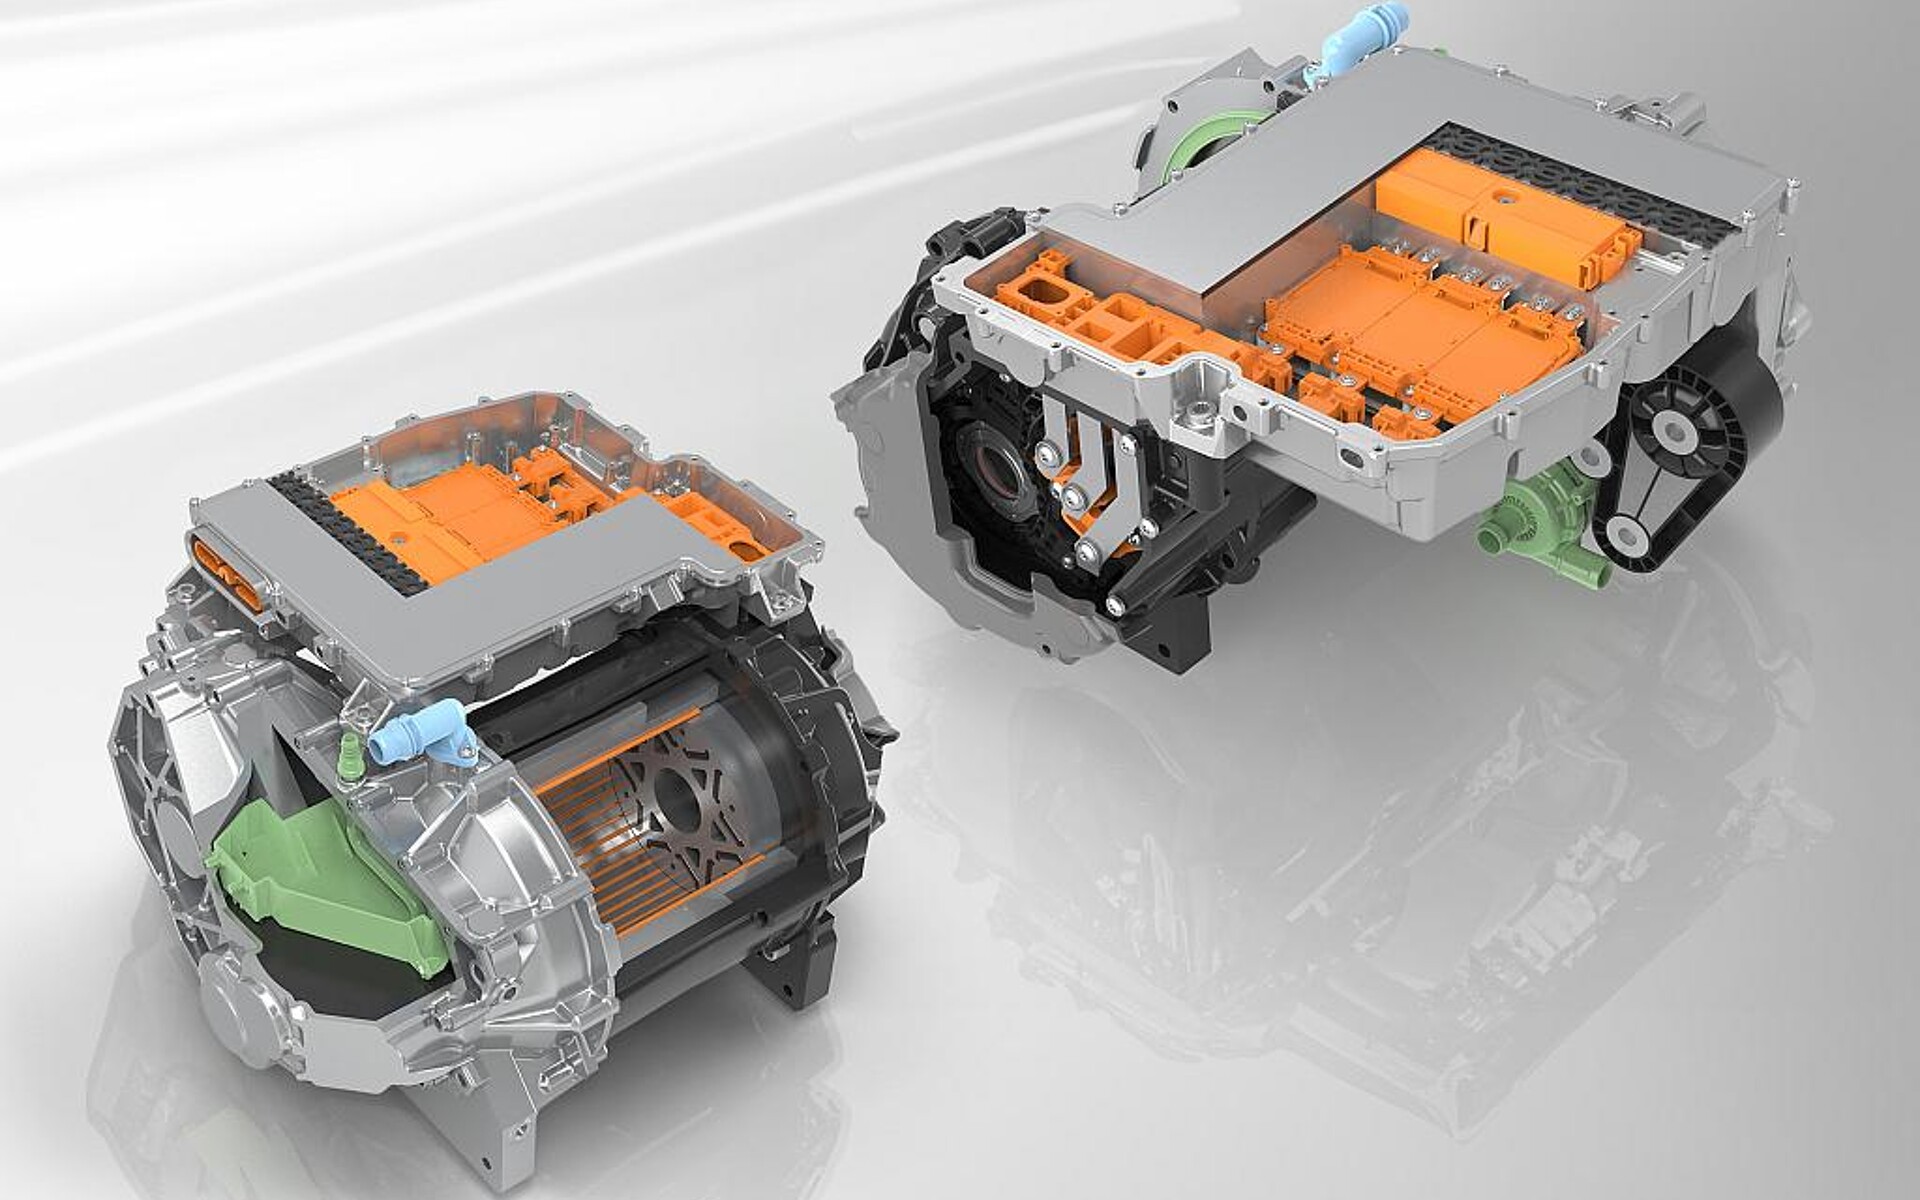 Für E-Motoren bietet die BASF neben einem umfangreichen Portfolio an technischen Kunststoffen auch Know-how-Unterstützung bis zur Serienproduktion des fertigen Bauteils. (Foto: BASF)